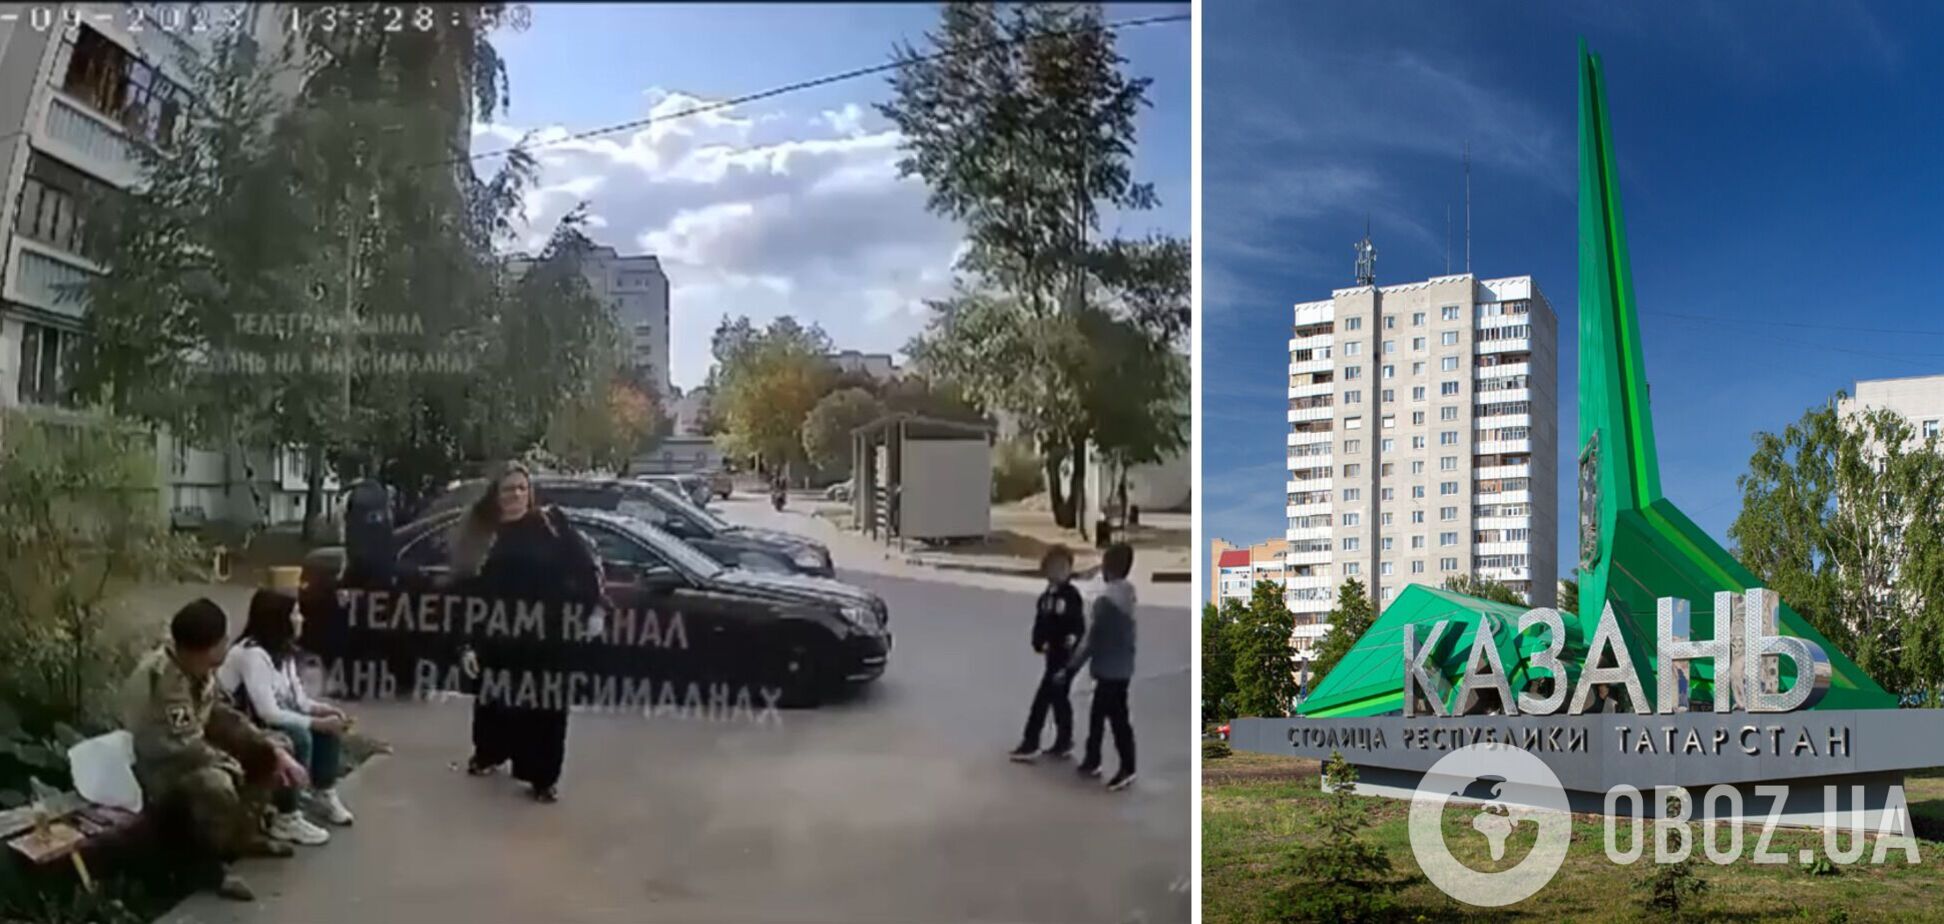 У Казані 'вояка' кинув гранату в сторону дітей, щоб 'розважити'. Відео